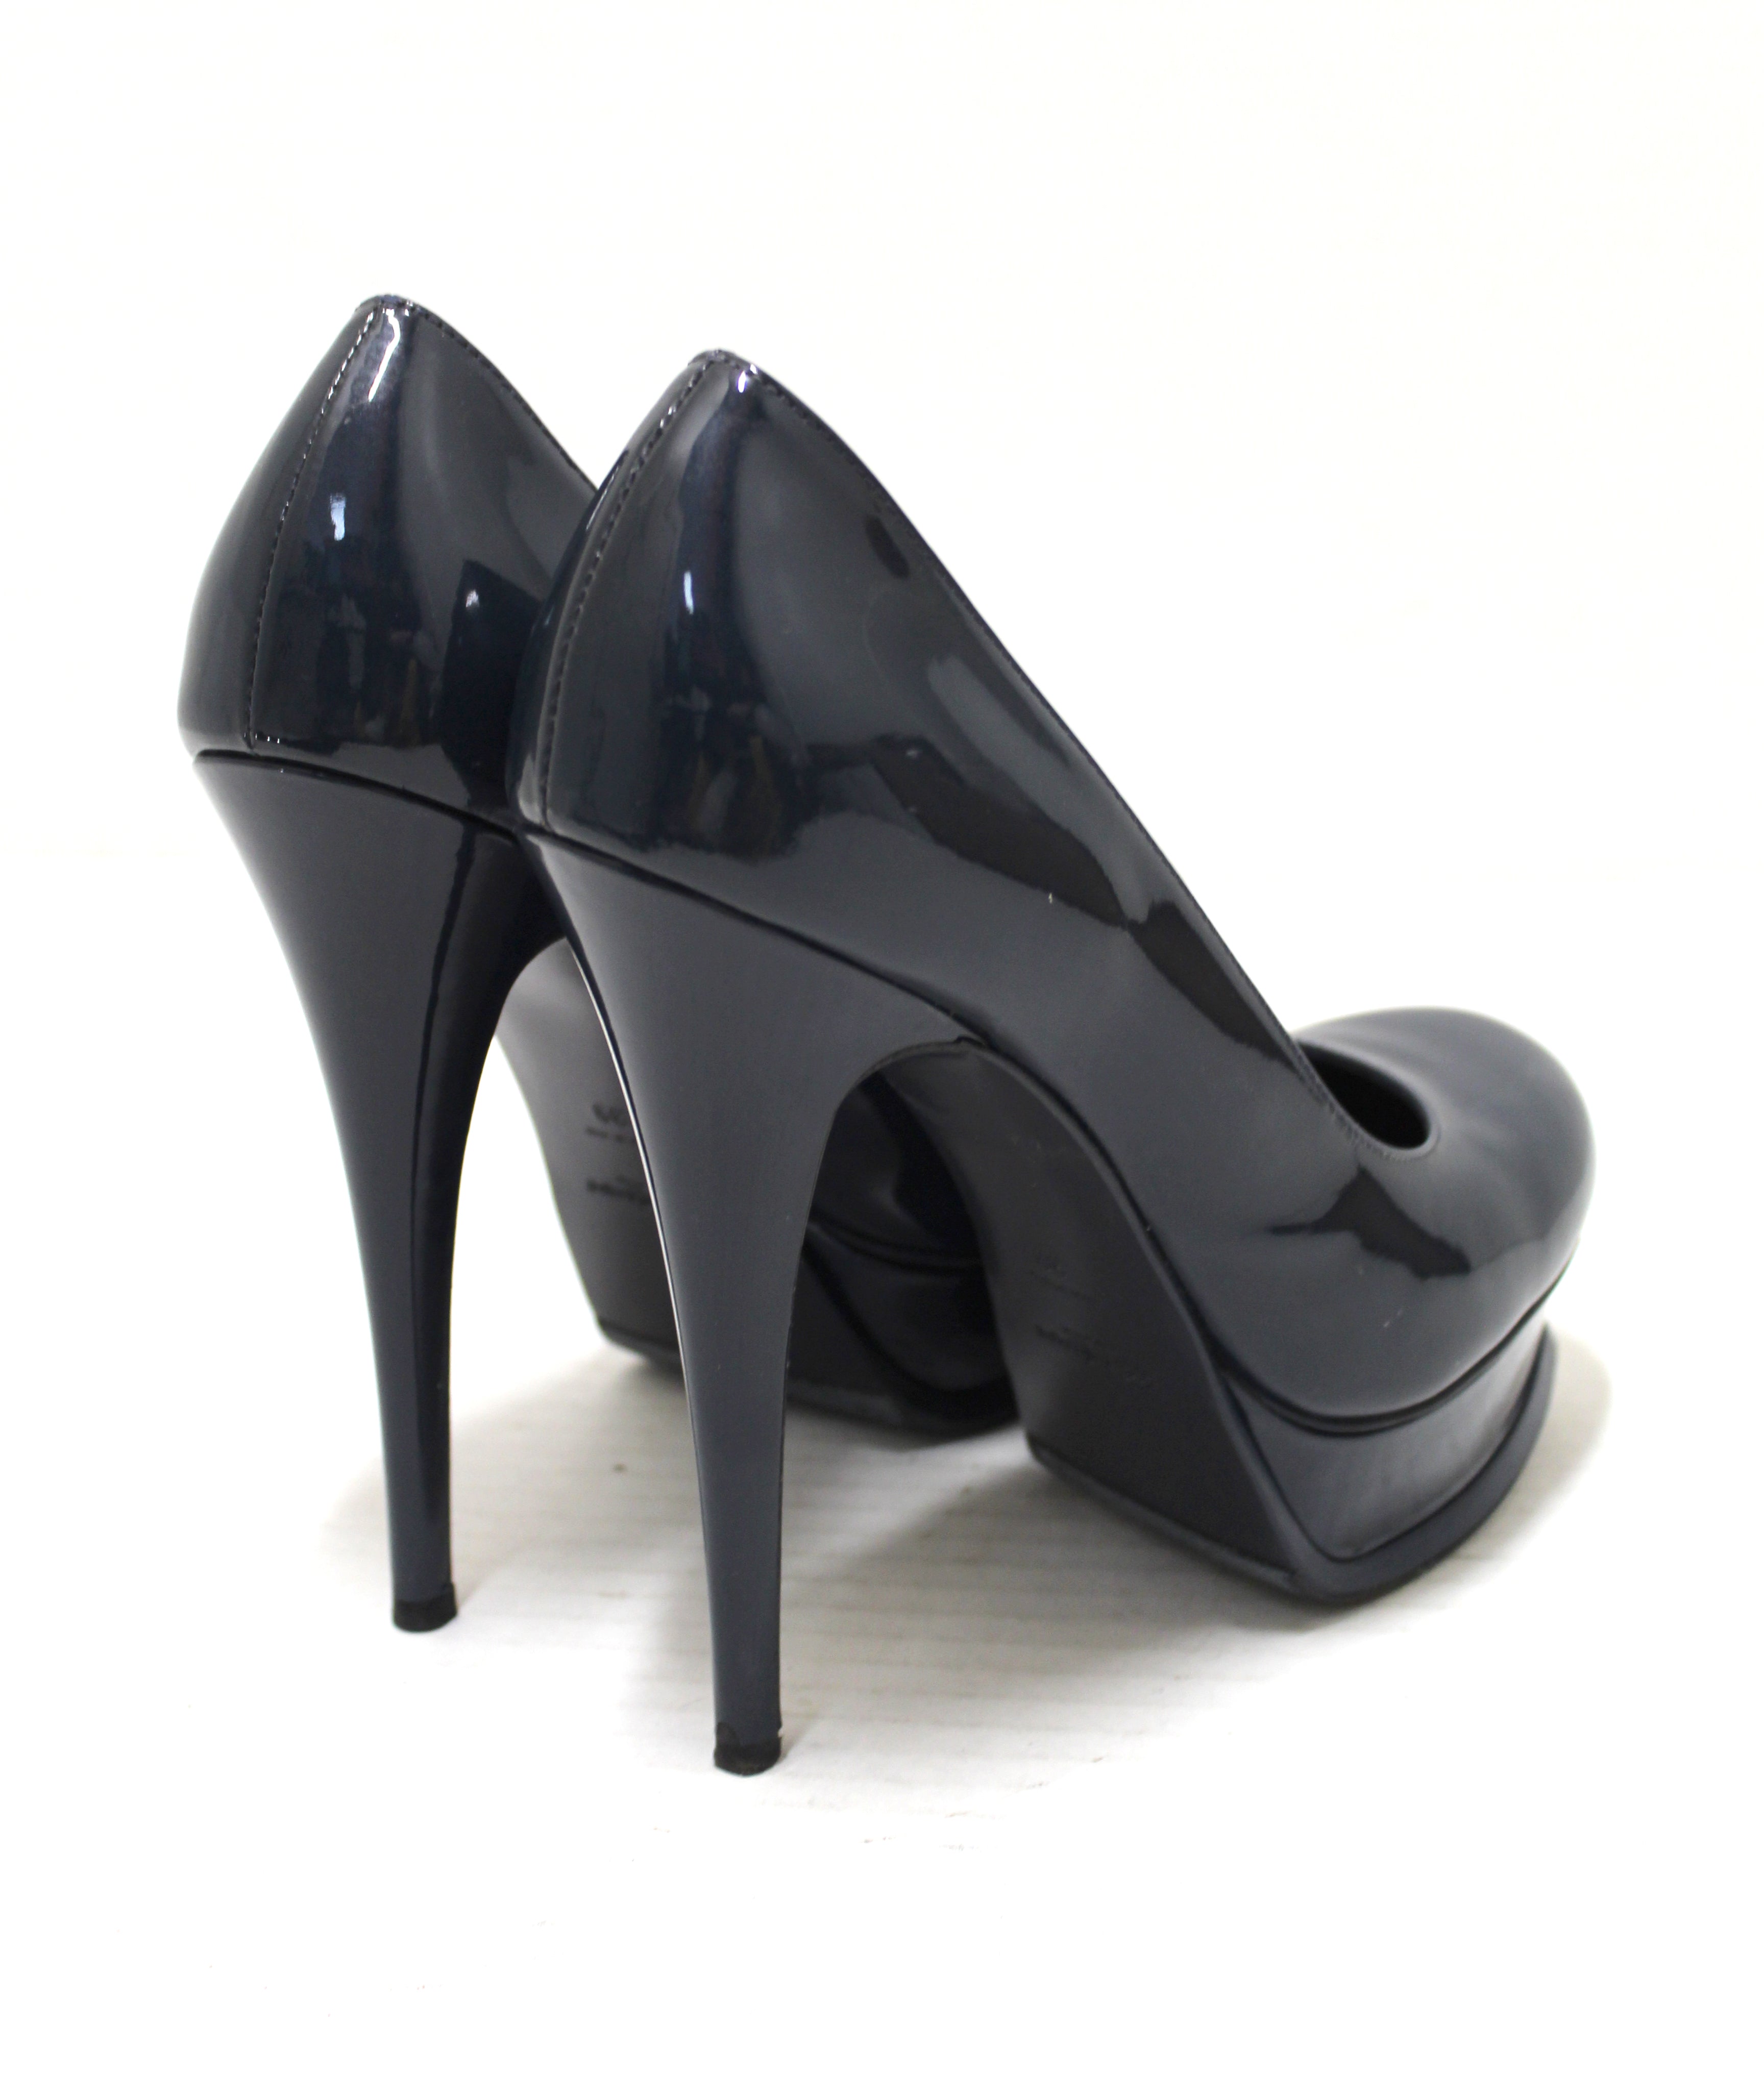 Yves Saint Laurent, Shoes, Ysl Logo Pumps Gold Heel Size 39